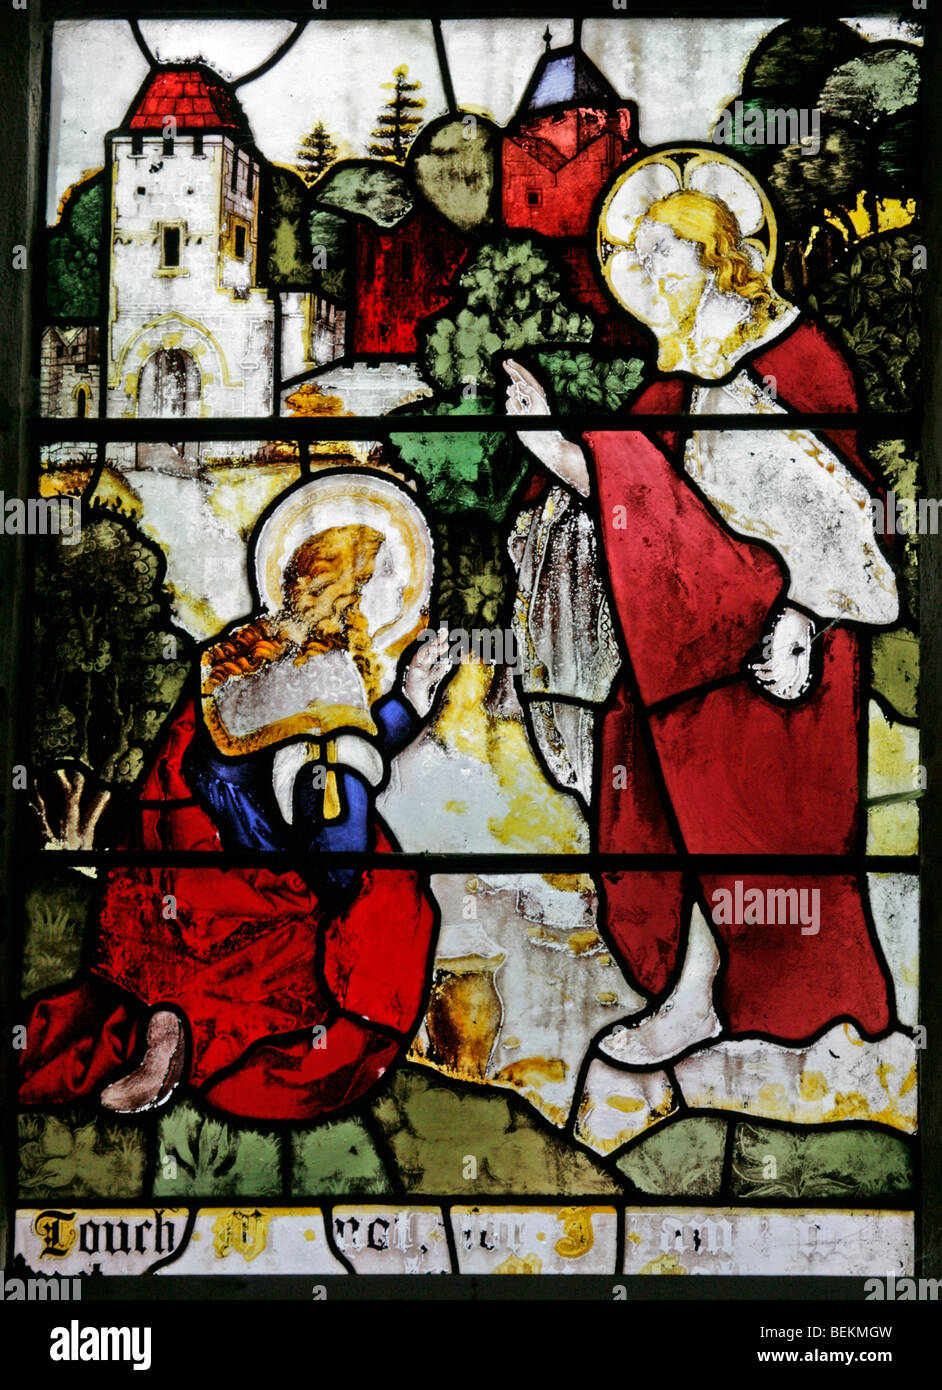 Le vitrail de la fenêtre de l'est All Saints Church, Shipdham, Norfolk représentant Jésus et Marie Madeleine Jardin de Gethsémani Banque D'Images